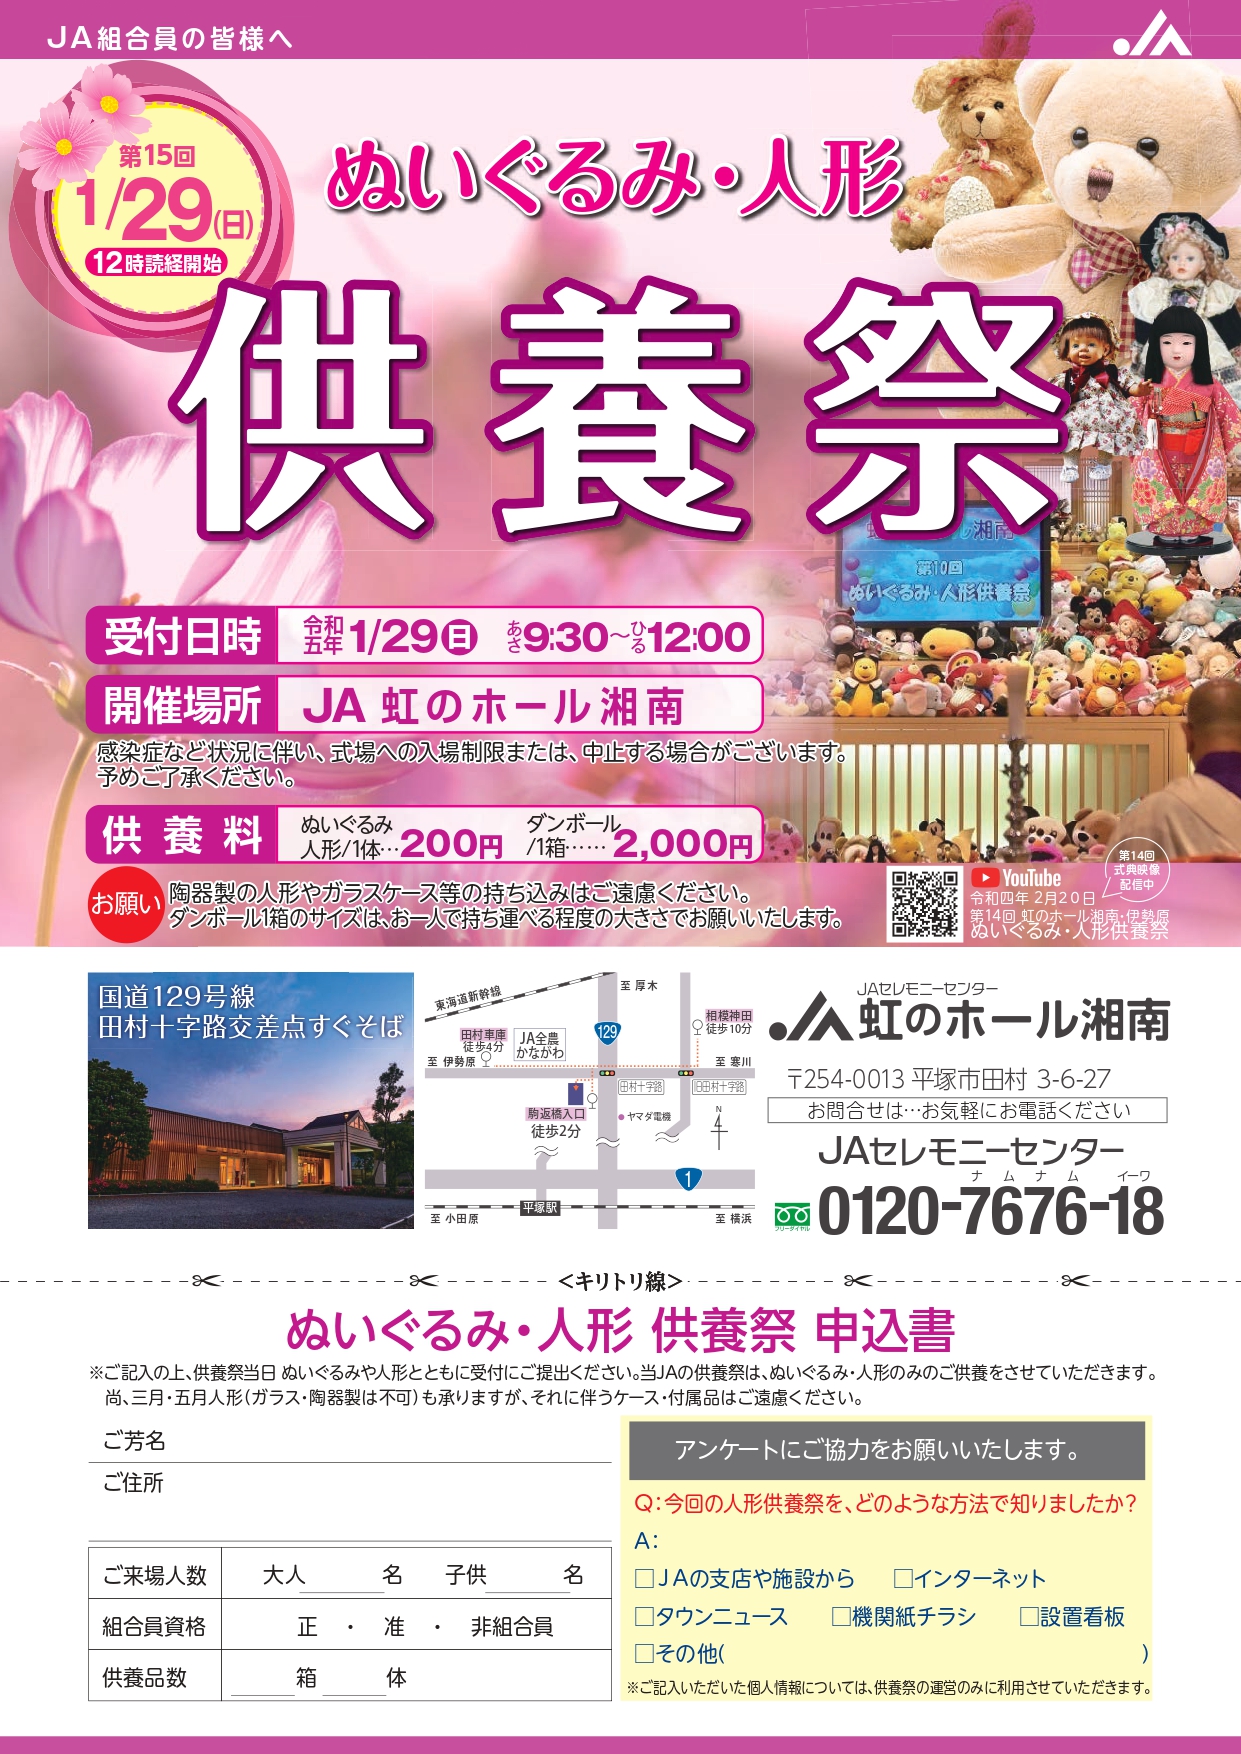 2023年1月29日 虹のホール湘南において「ぬいぐるみ・ 人形供養祭 」を開催いたします。 ご予約は不要ですので、お気軽にお越しください。 ＪＡ葬祭神奈川 ホームページに、各種イベント案内を掲載しておりますので、ぜひご確認ください。 https://jakanagawa-sousaikyougikai.jp/